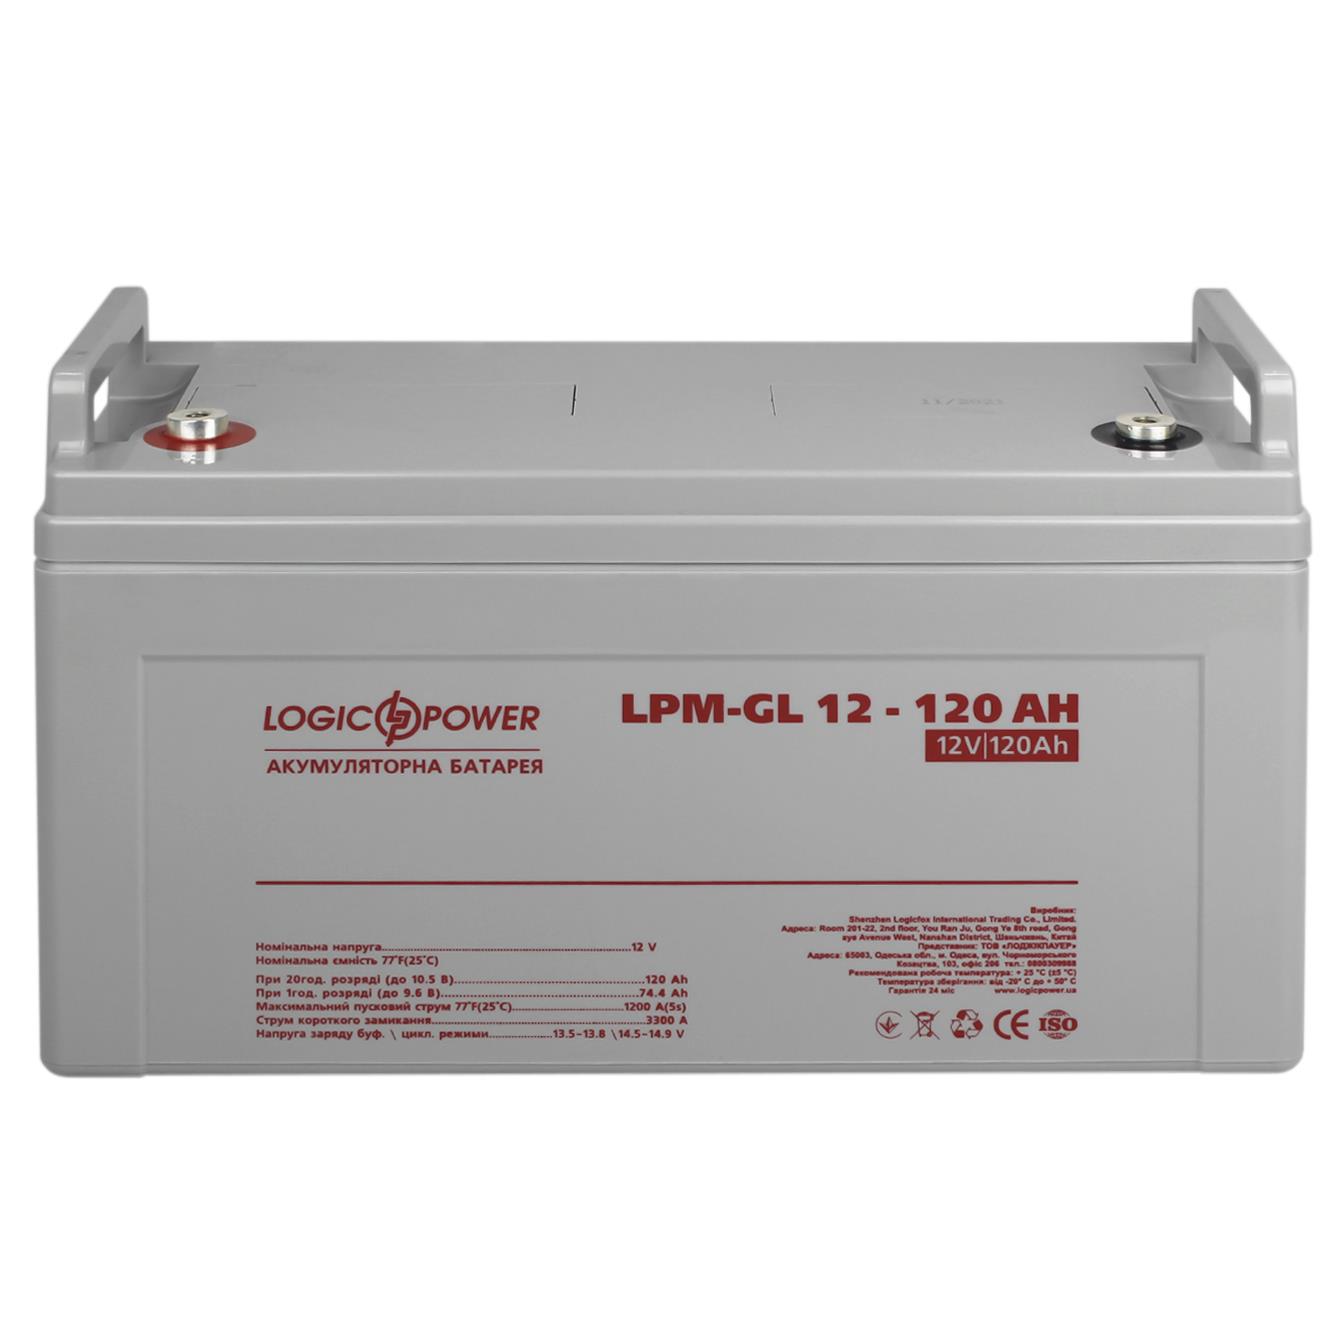 Аккумулятор гелевый LogicPower LPM-GL 12V - 120 Ah (3870) отзывы - изображения 5